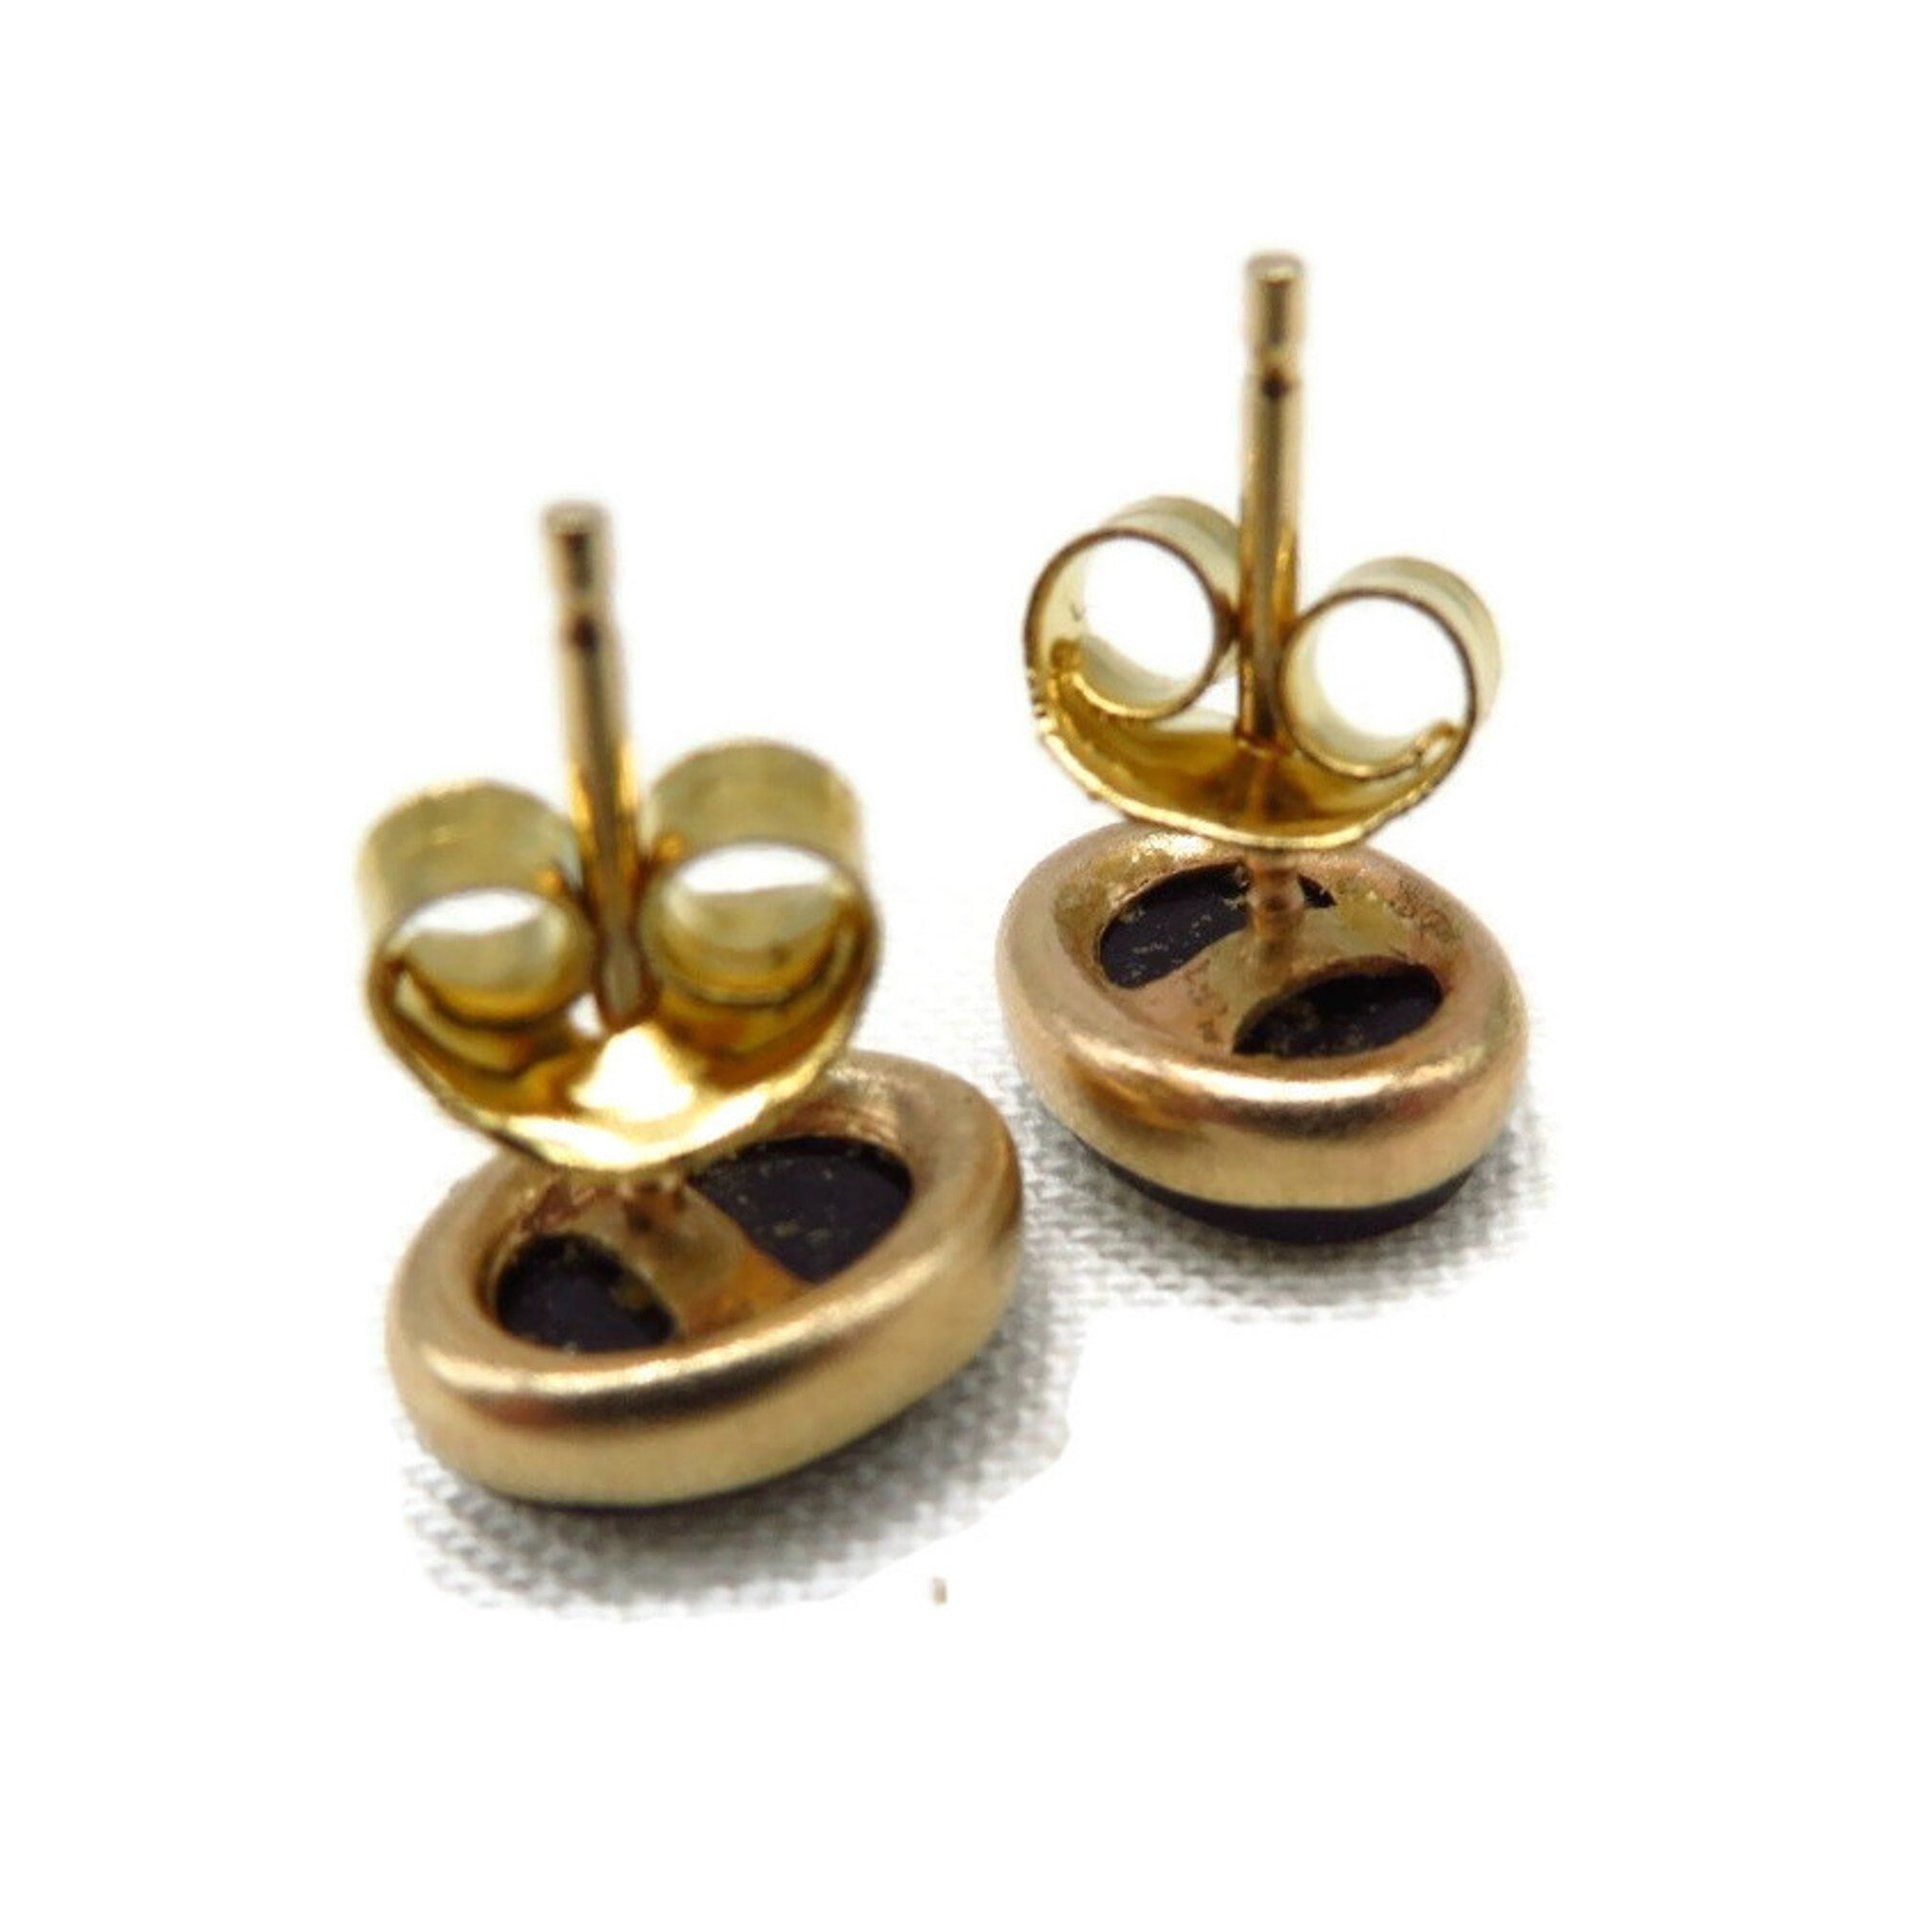 14K Gold Onyx Pierced Stud Earrings